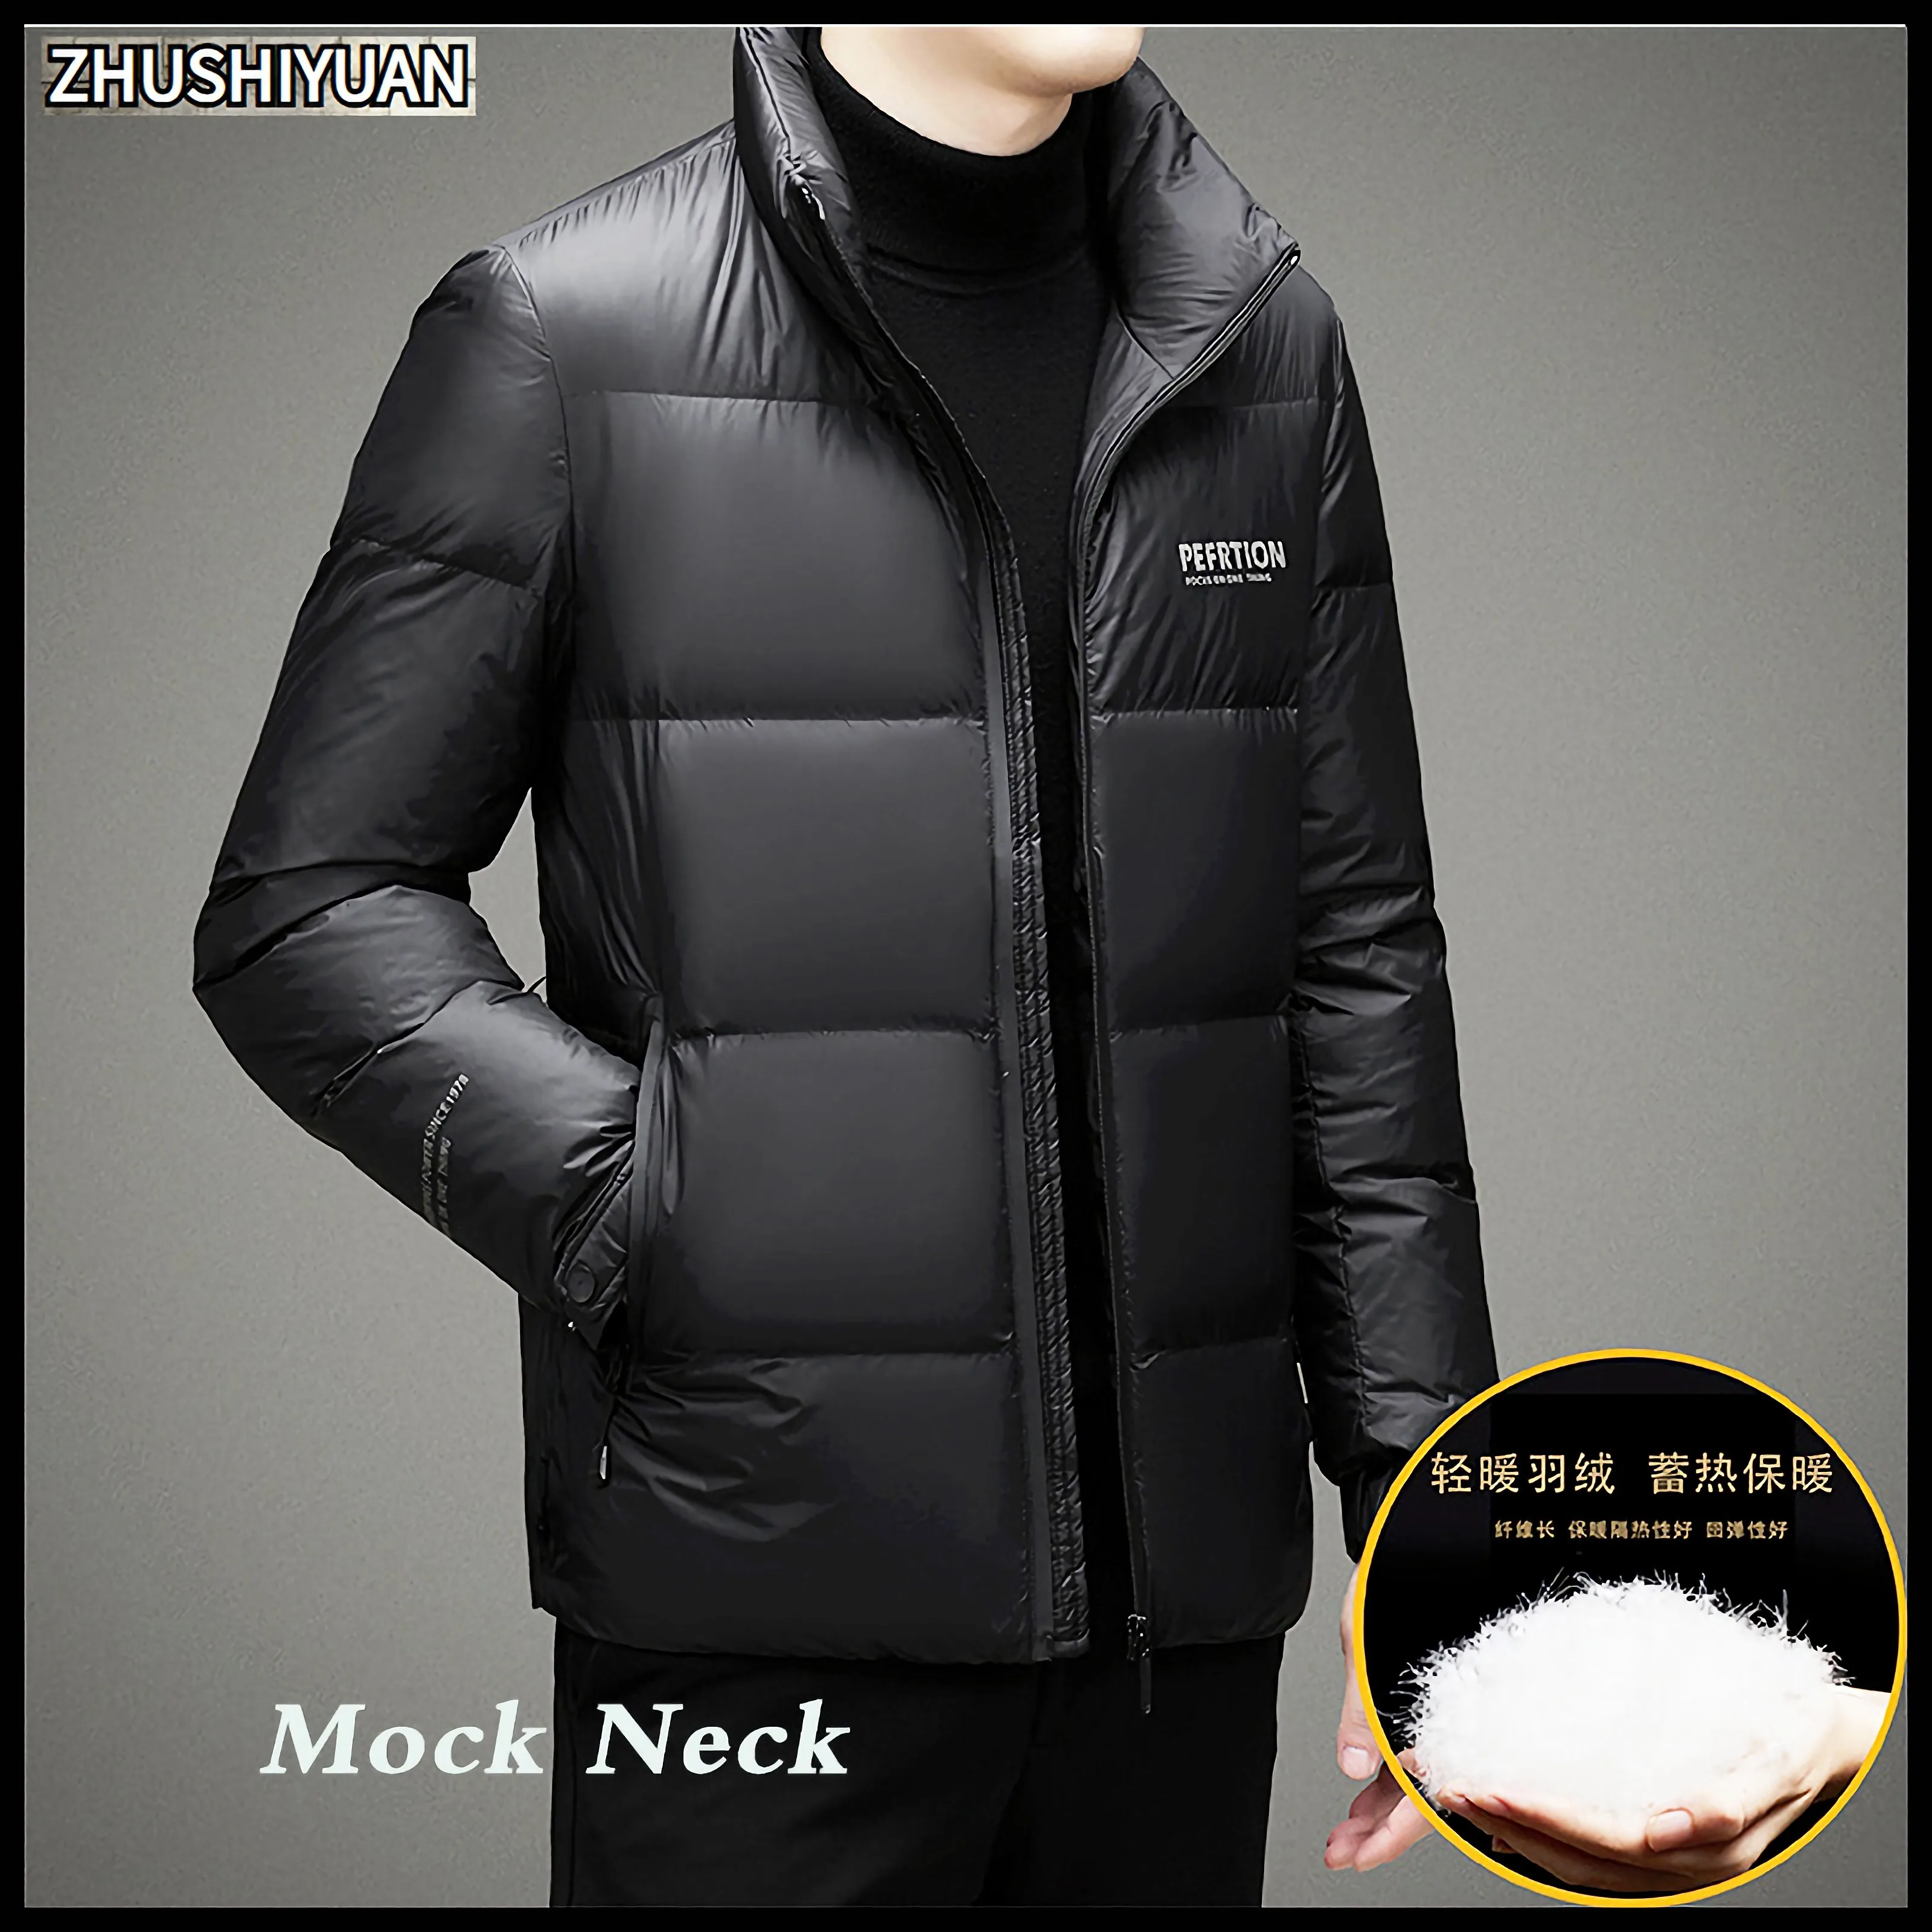 2022 Winter Jacket Men Parkas Fashion Thicken Warm Coat Jackets Manteaux Ceketler Doudoune Homme Jaquetas Designer Clothes Coats